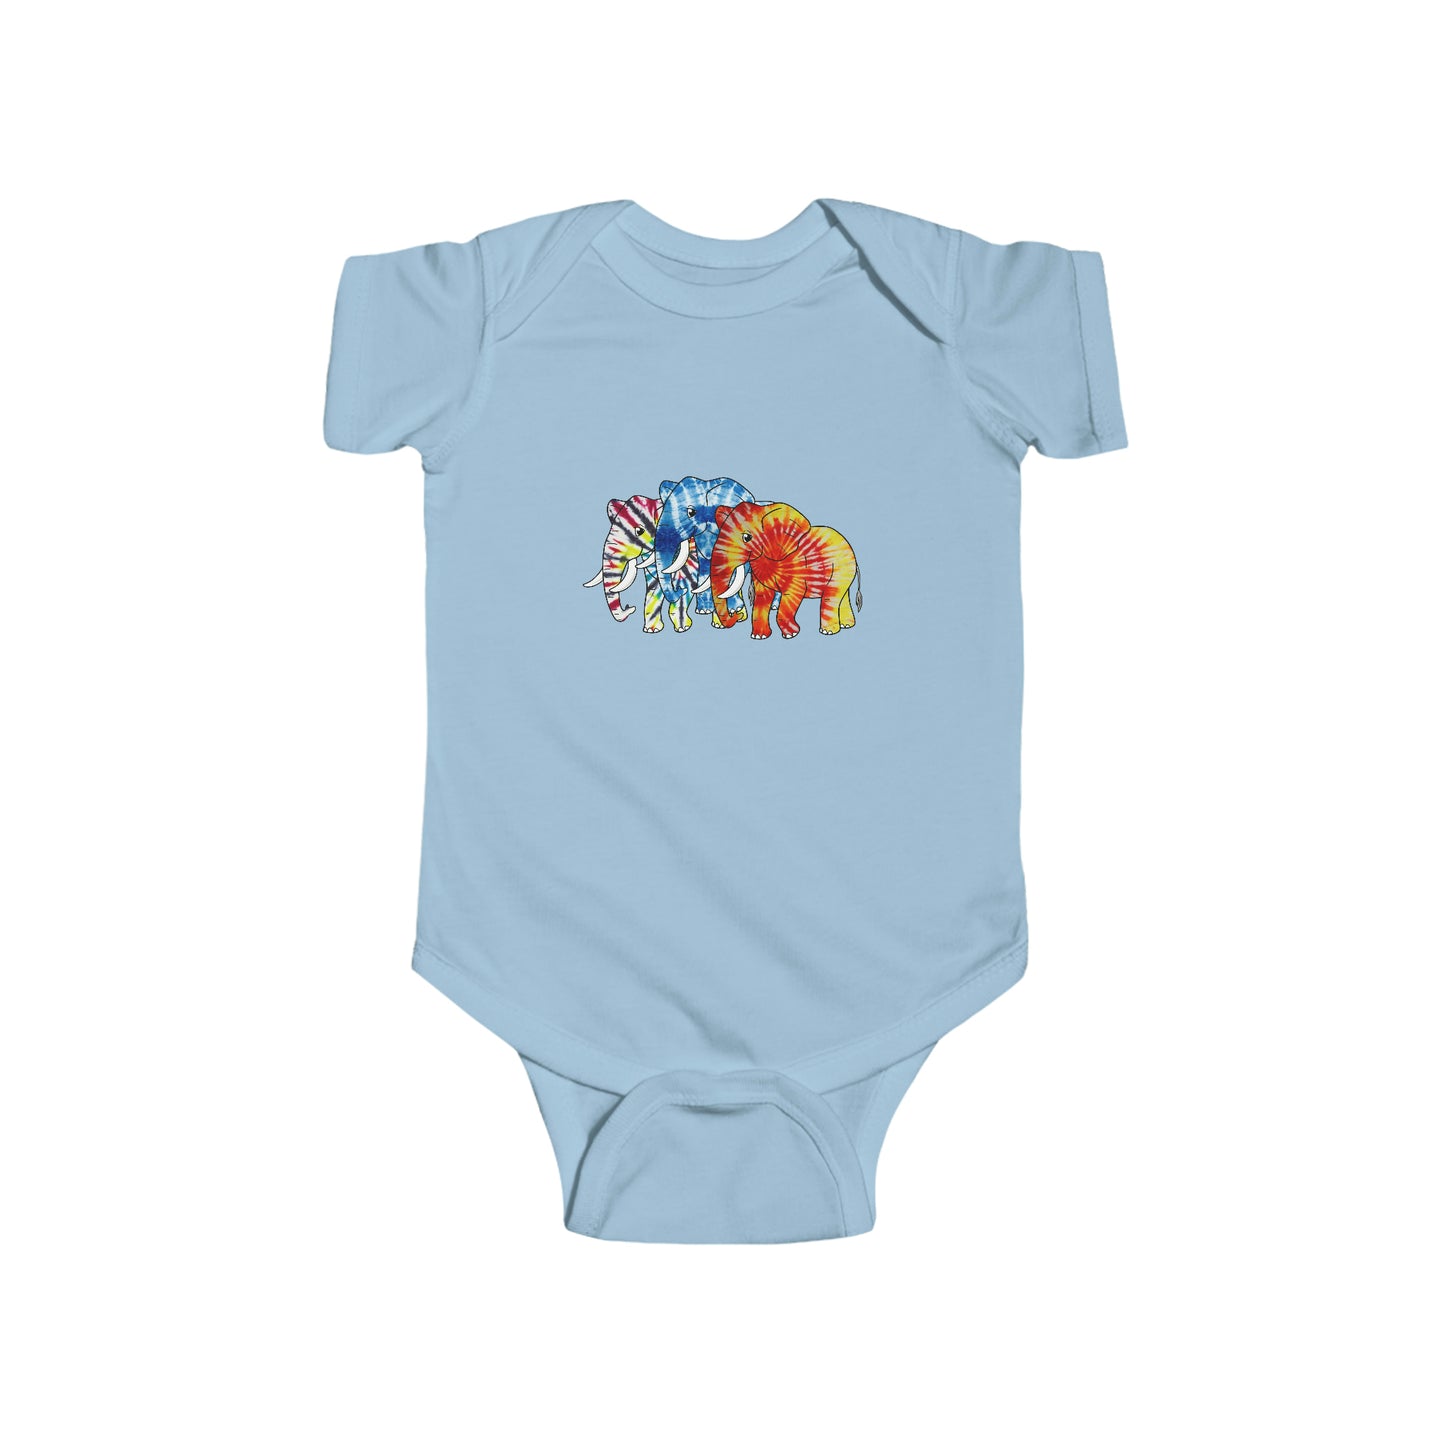 3 Tie Dye Elephants Infant Fine Jersey Bodysuit